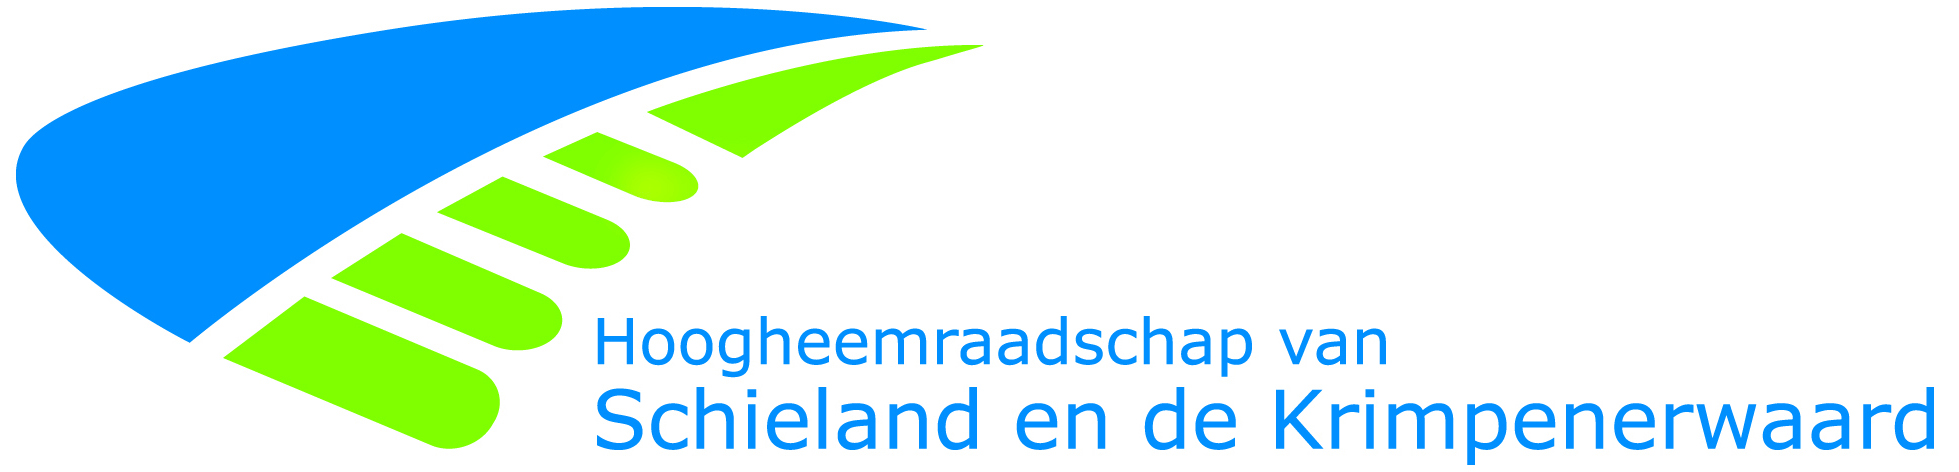 logo Hoogheemraadschap 